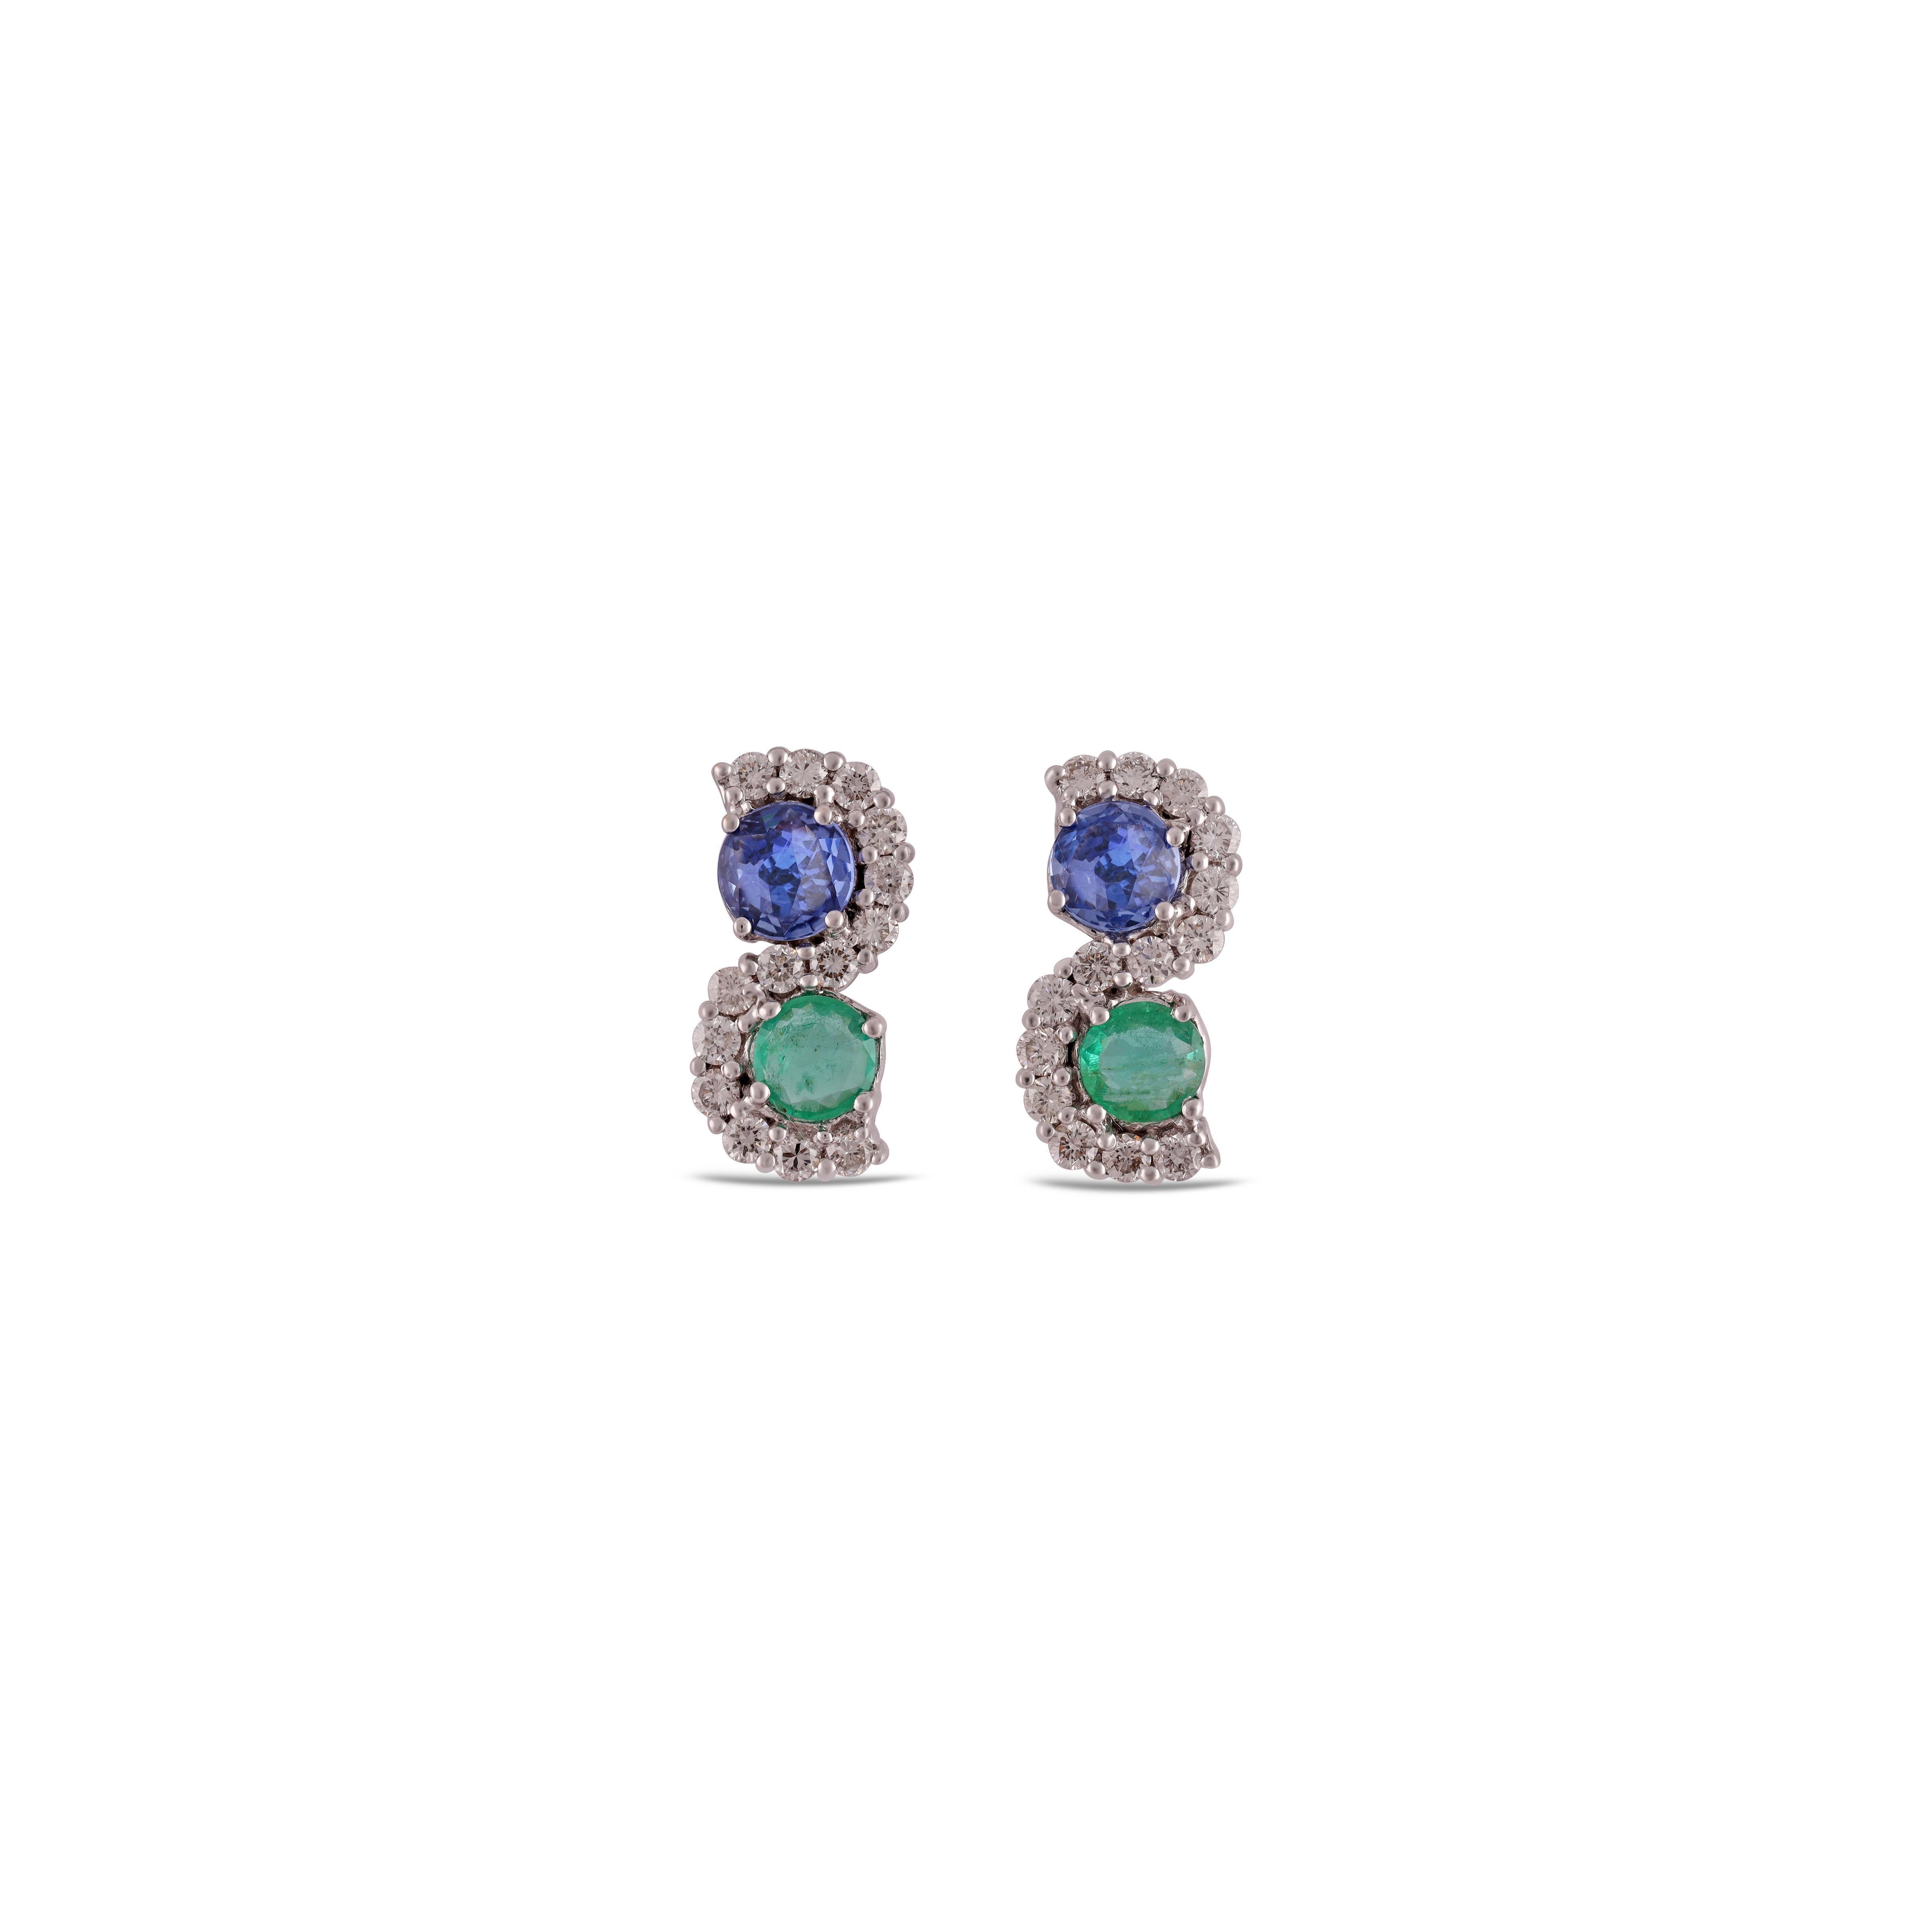 Ein atemberaubendes, feines und beeindruckendes Paar von  1,23 Karat blauer Saphir, Smaragd 0,67 Karat  & 0,56 Karat  Diamant mit massivem 18k Gold. 

Ohrstecker sind von subtiler Schönheit und bringen die Farben der natürlichen Edelsteine und